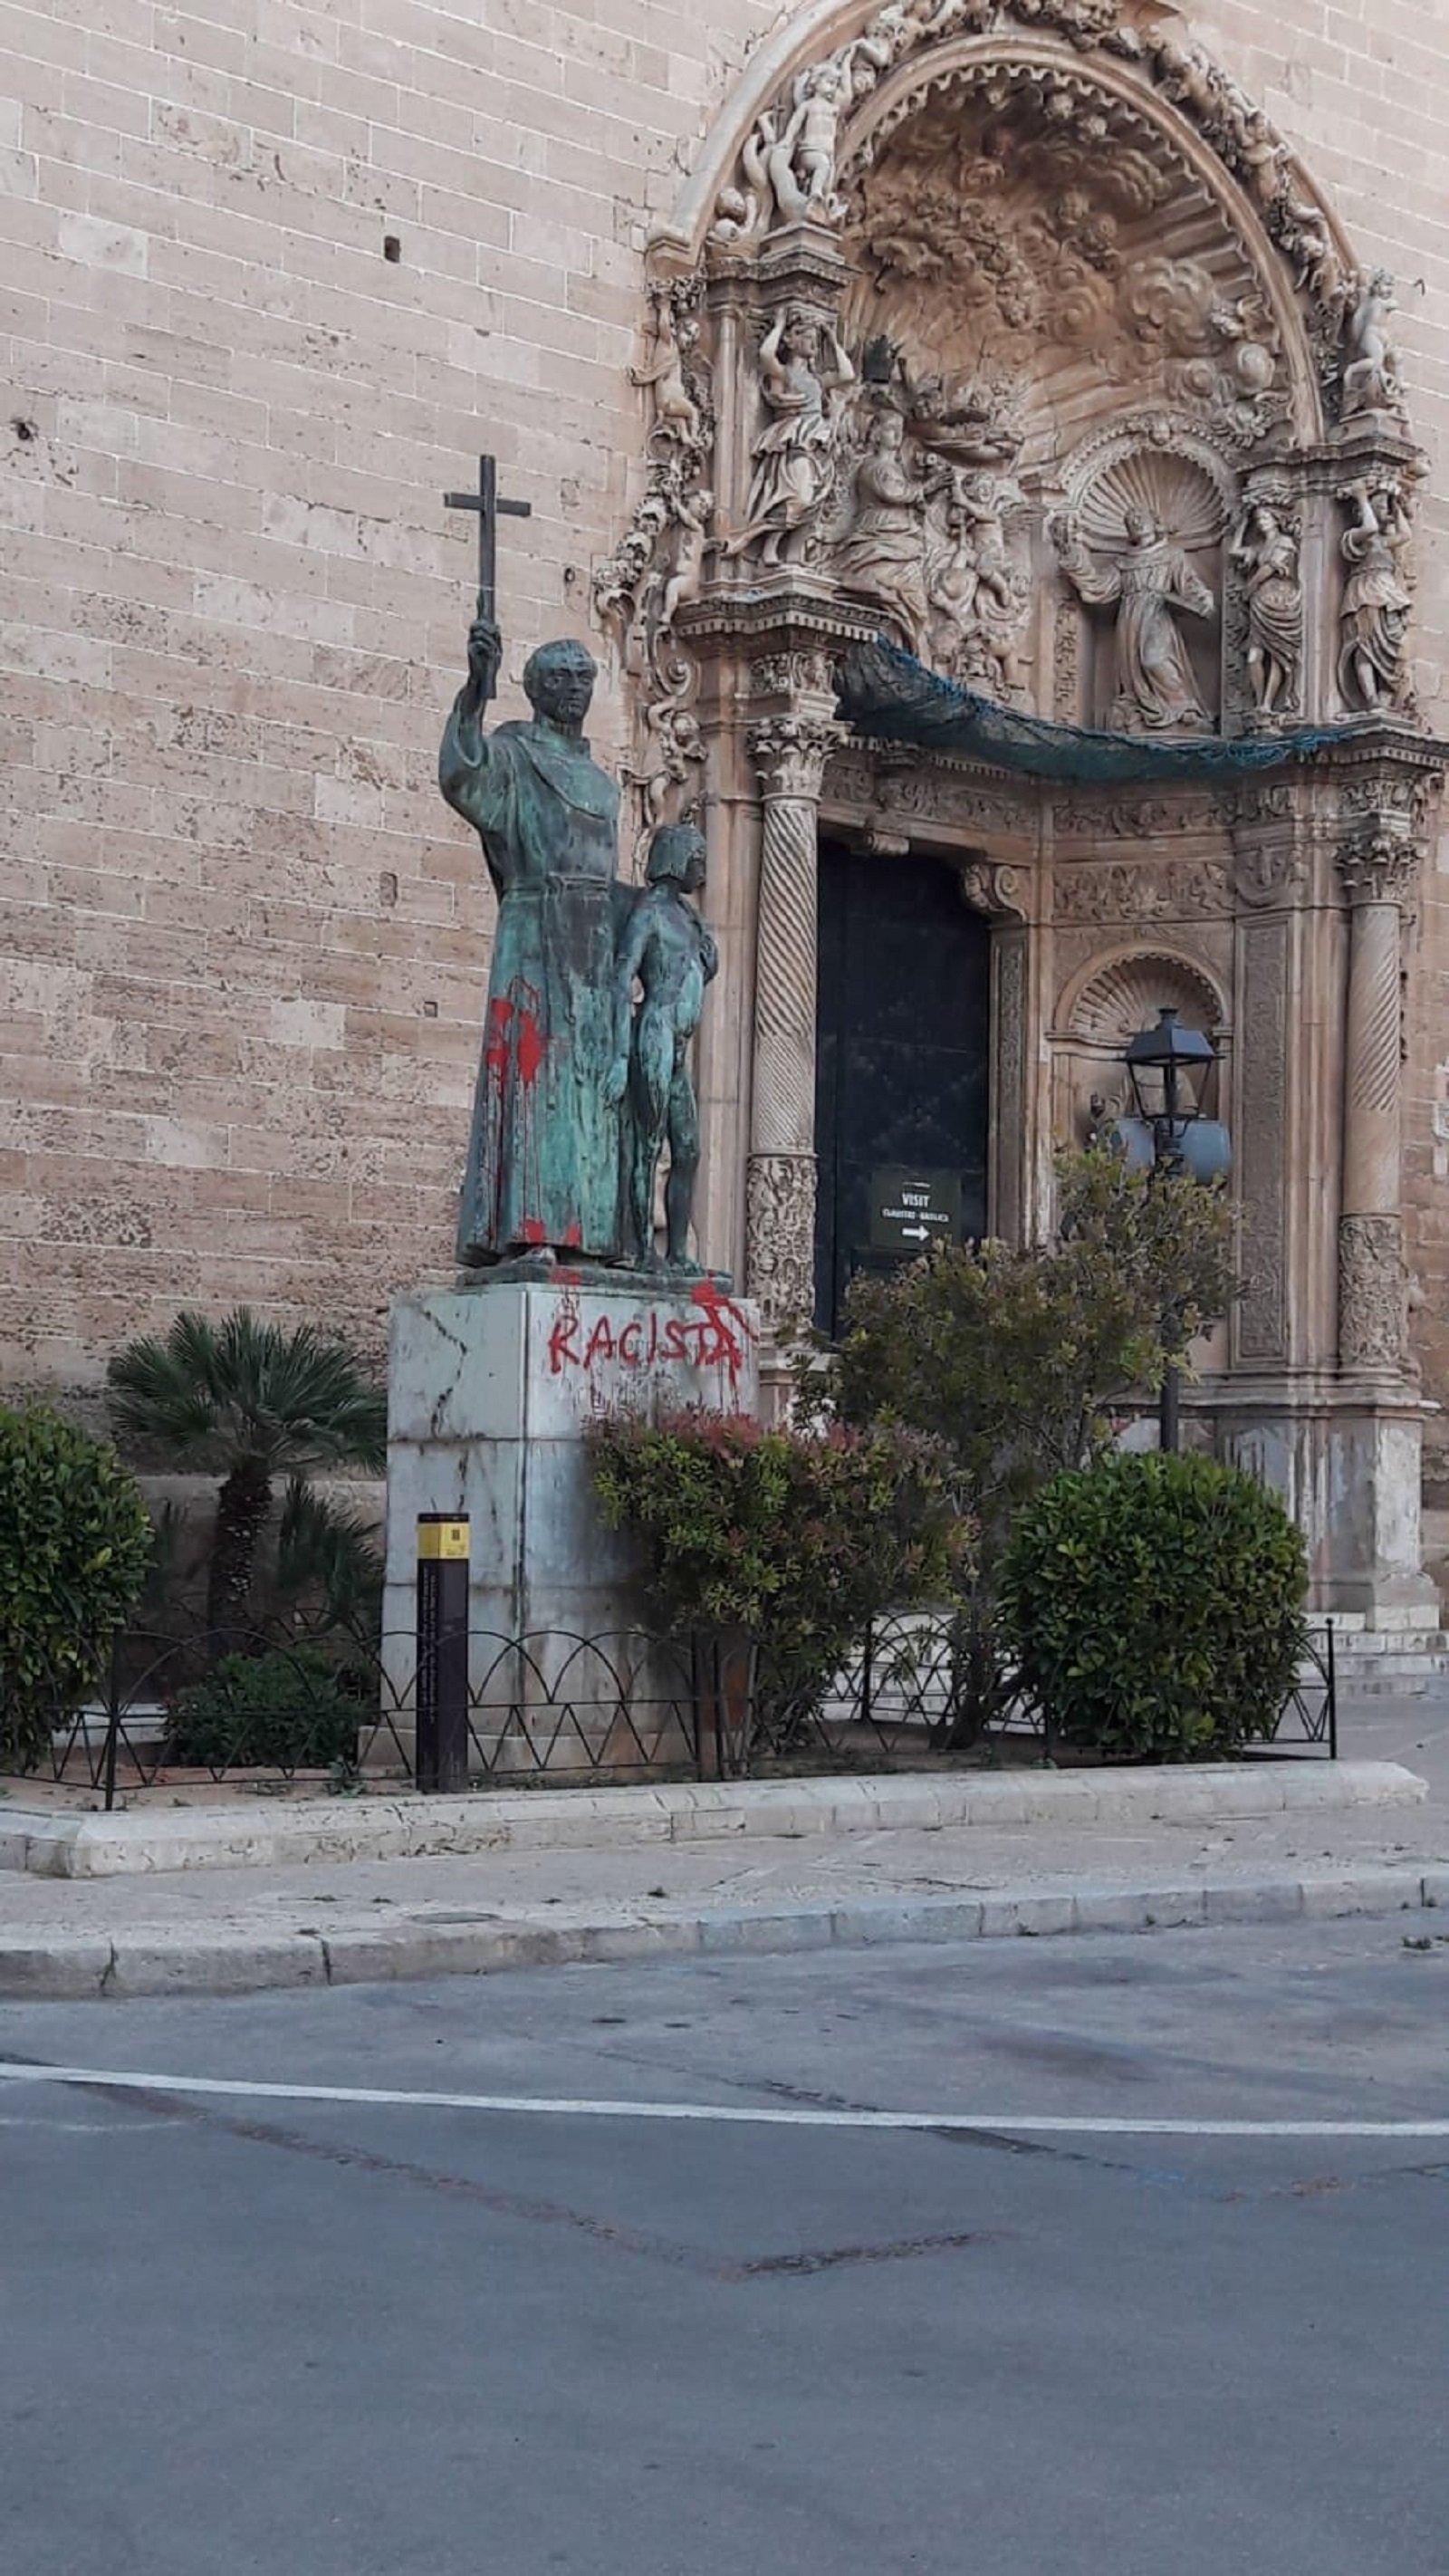 Apareix pintada i amb insults de "racista" l'estàtua de Juníper Serra a Palma